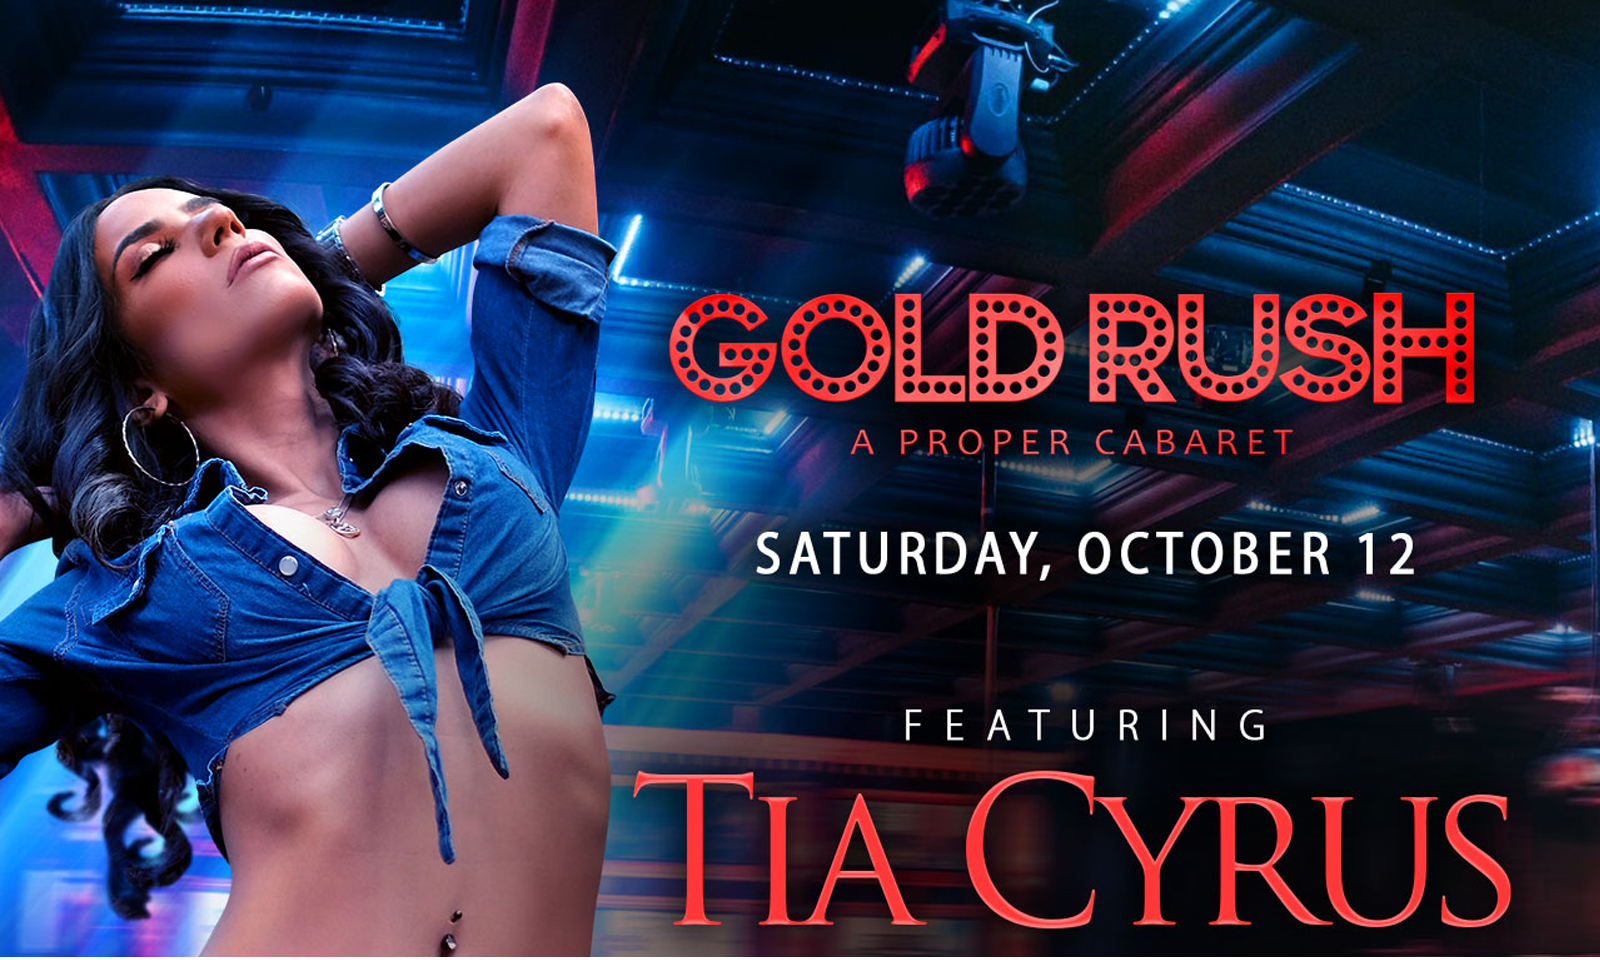 Tia Cyrus Set to Appear at Exxxotica Miami